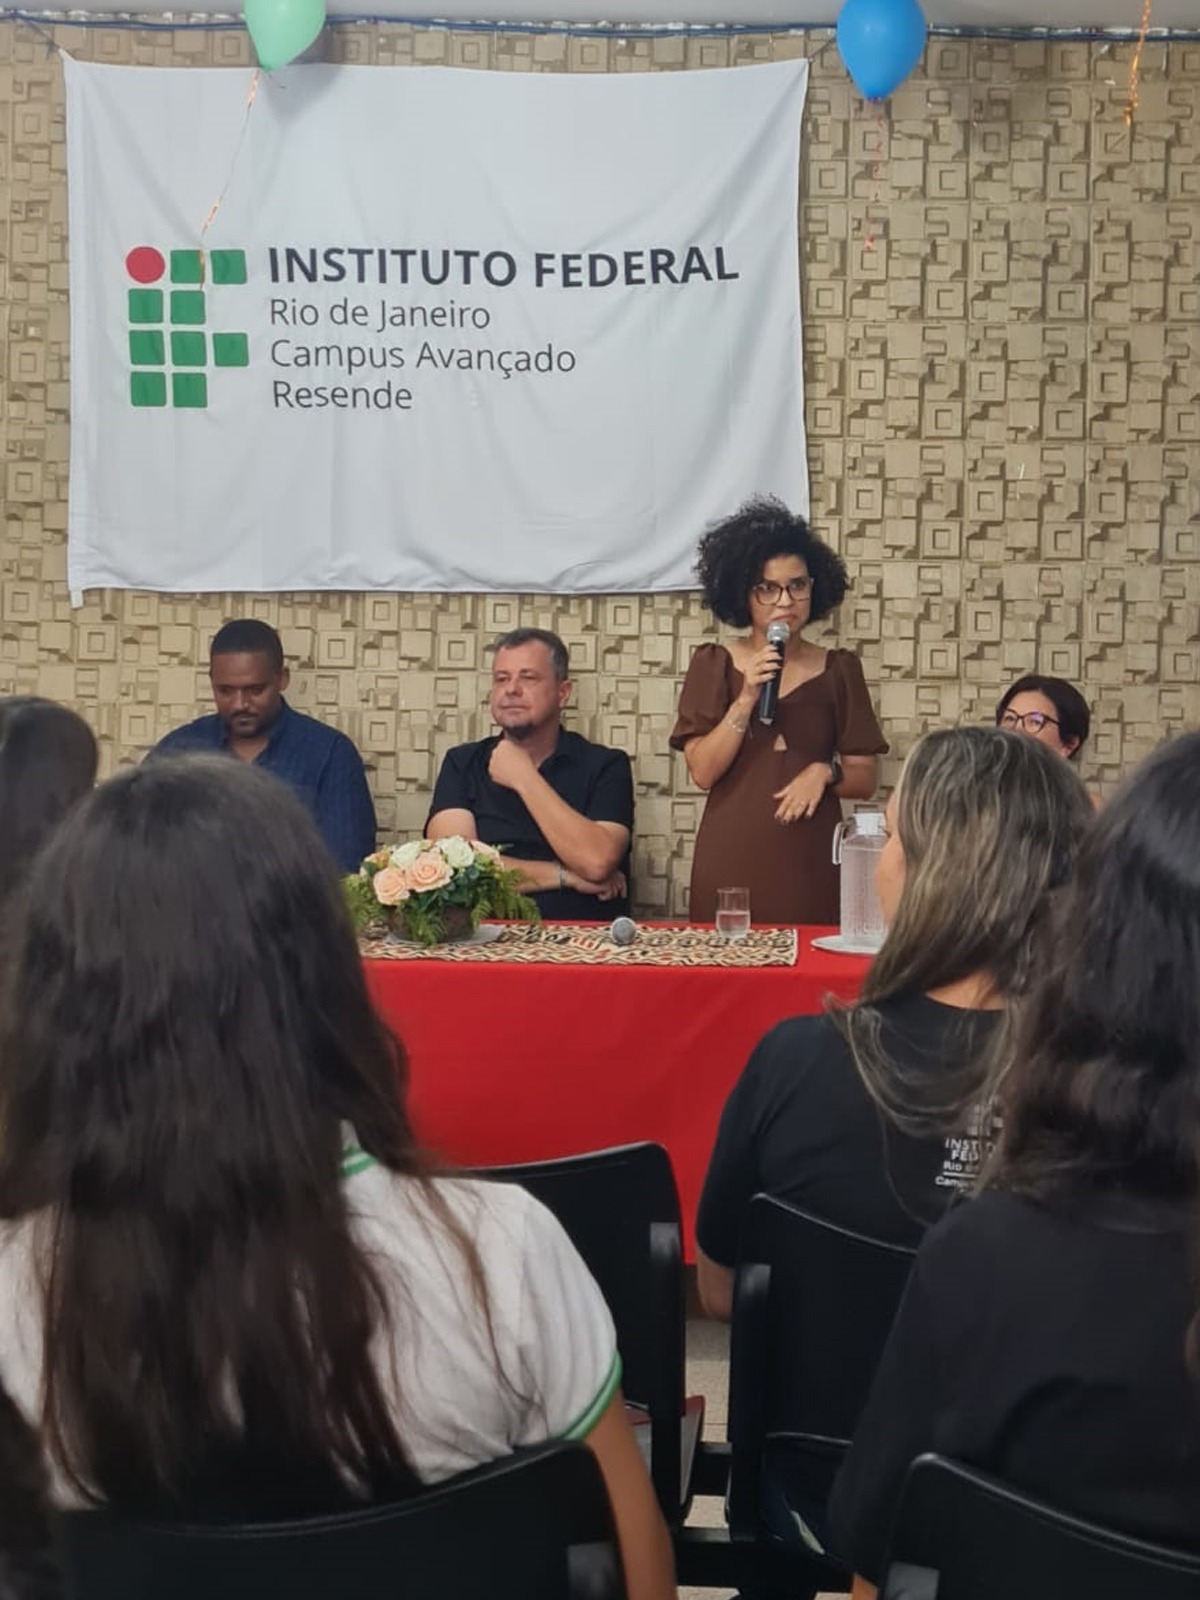 Instituto Federal do Rio de Janeiro - IFRJ - Você conhece os